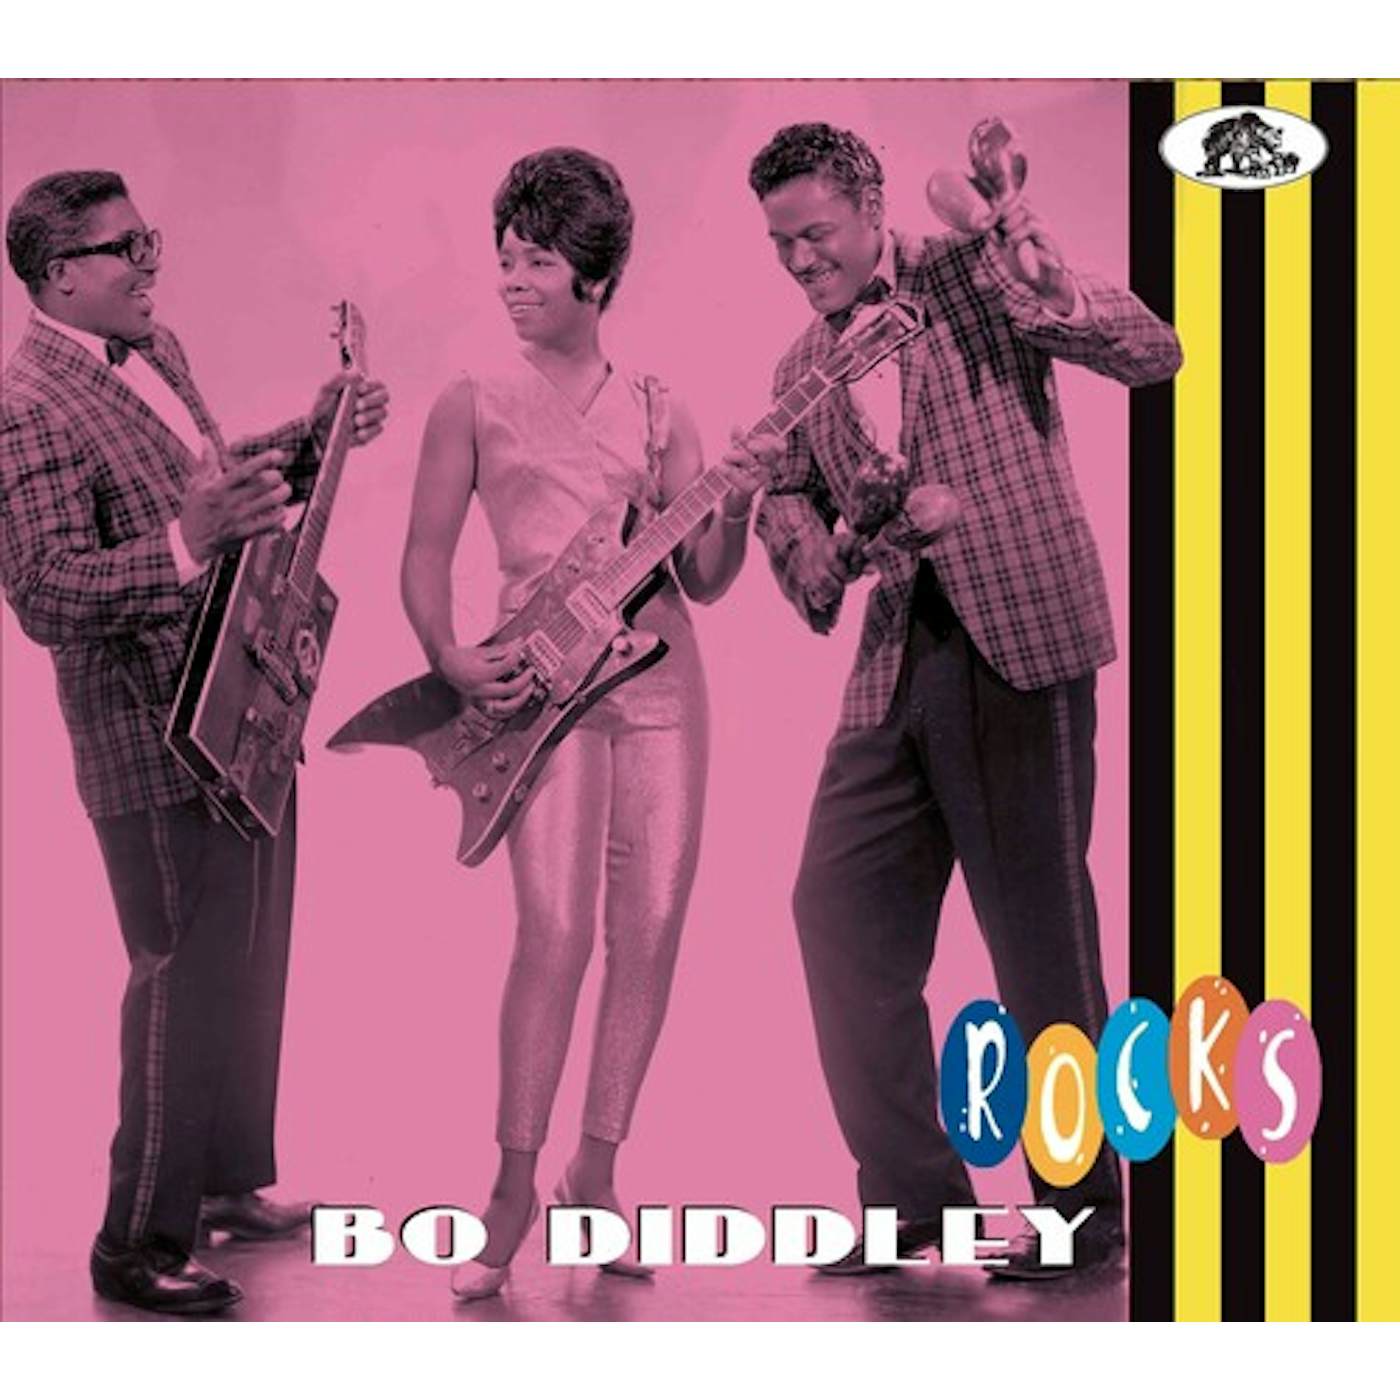 Bo Diddley ROCKS CD